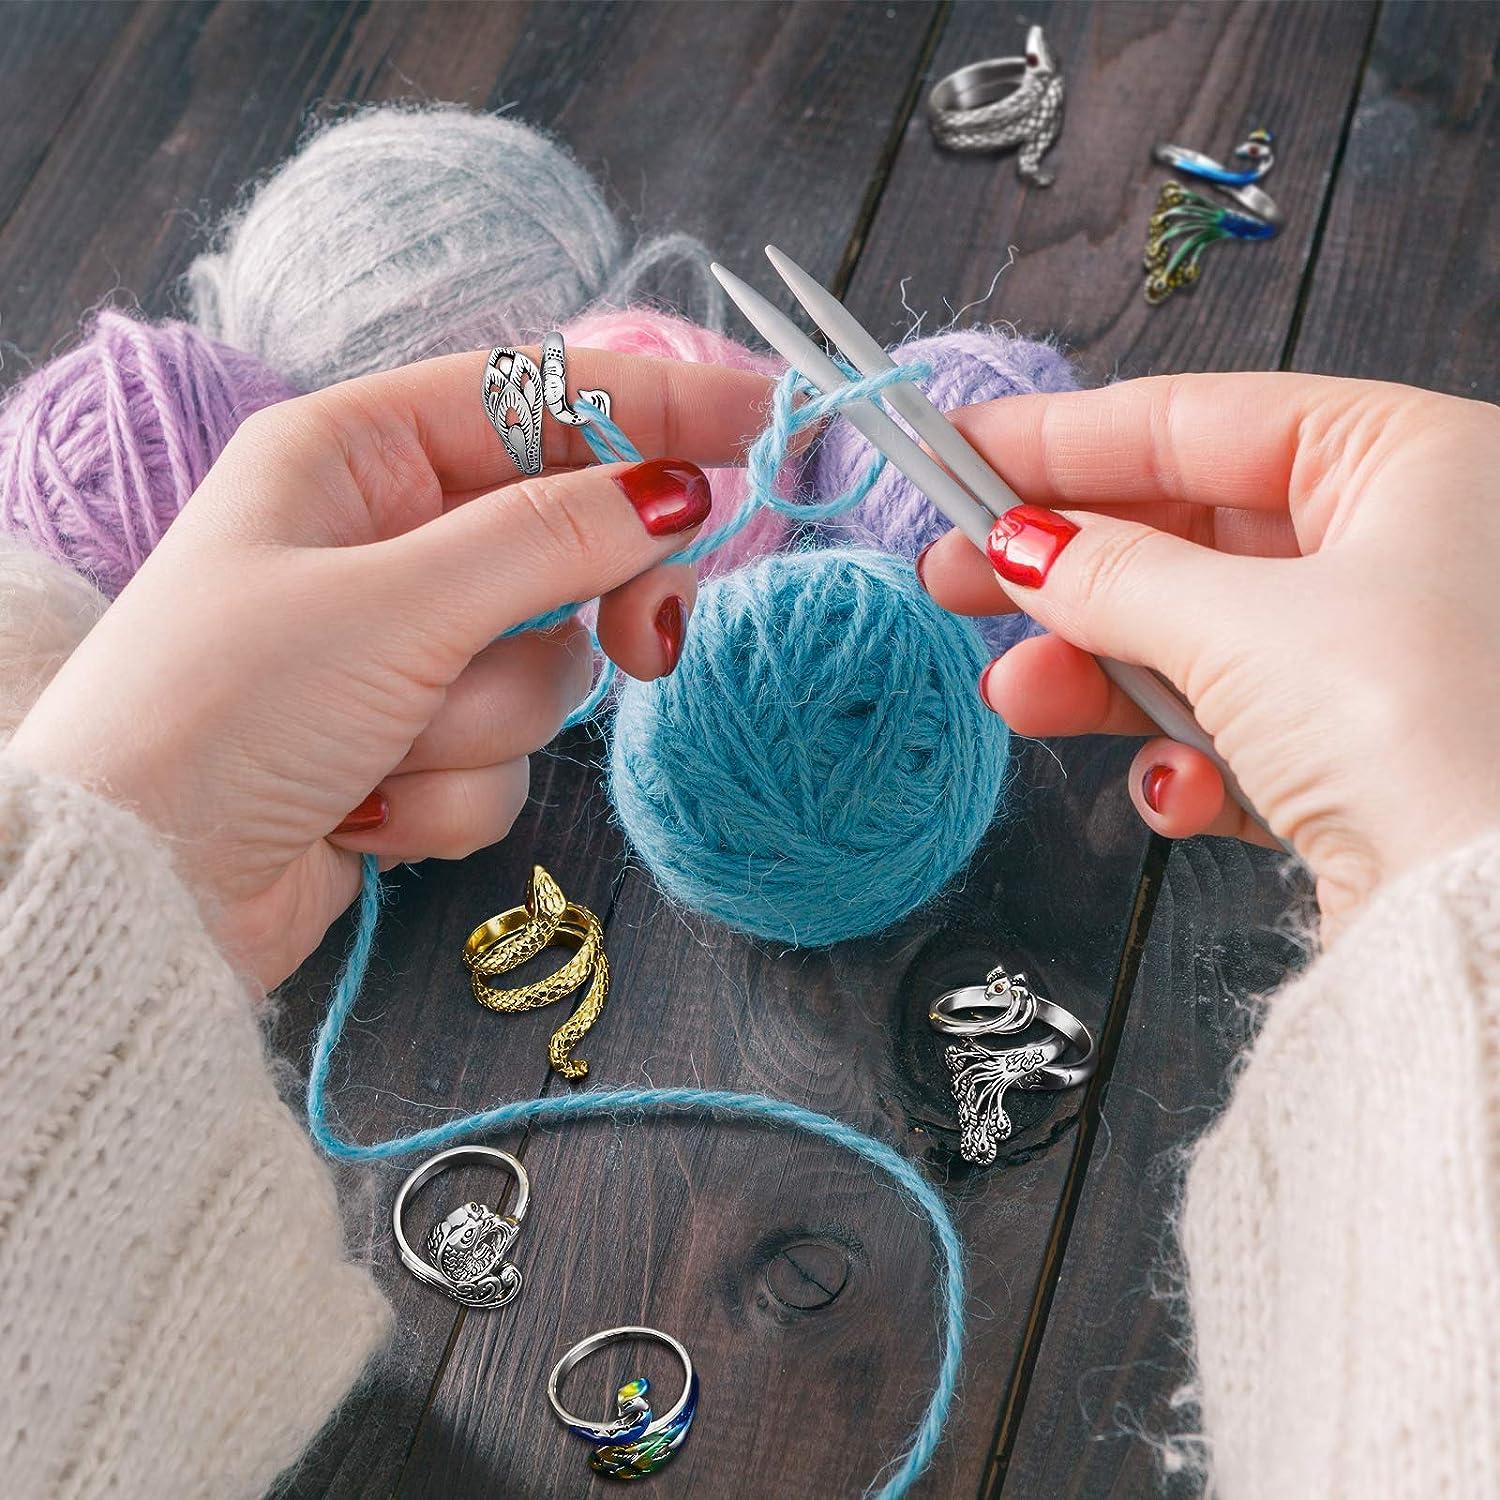 8 Pieces Crochet Ring Crochet Loop Ring Crochet Ring for Finger